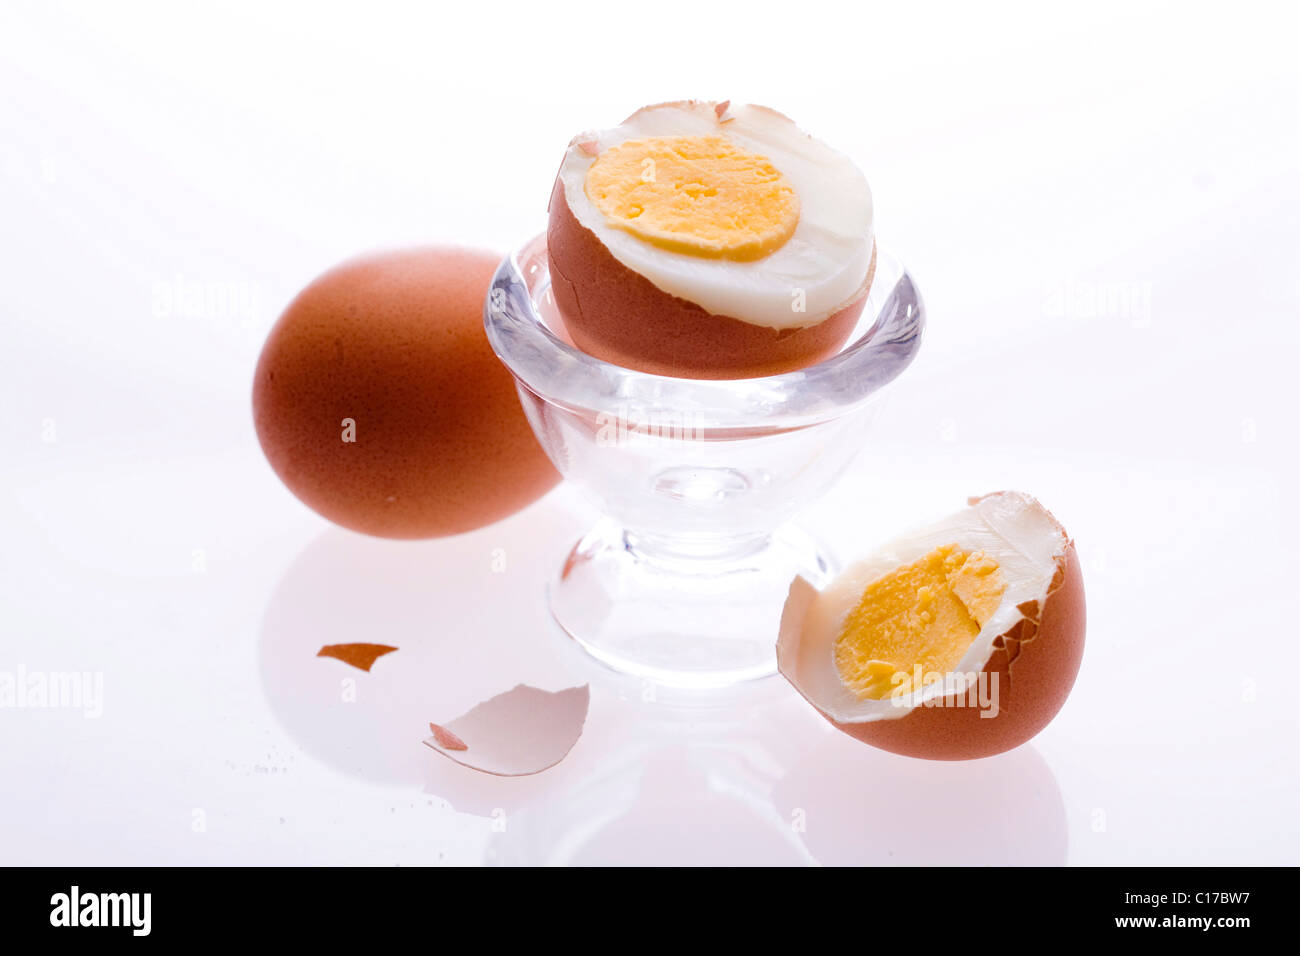 Hard-boiled egg, halves Stock Photo